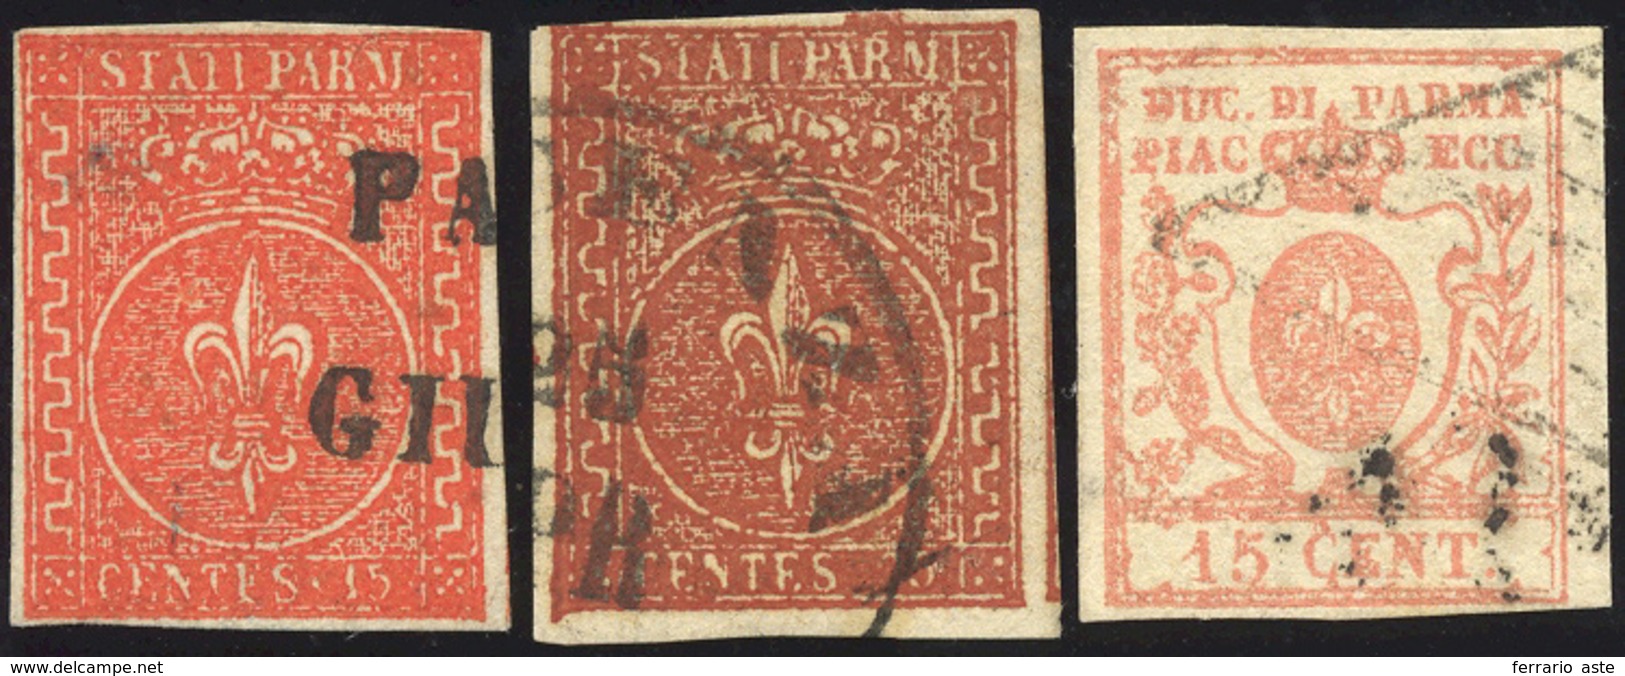 1853/59 - 15 Cent. Vermiglio, 25 Cent. Bruno Rosso E 15 Cent. Vermiglio (7/9), Usati, Perfetti. Firm... - Parma